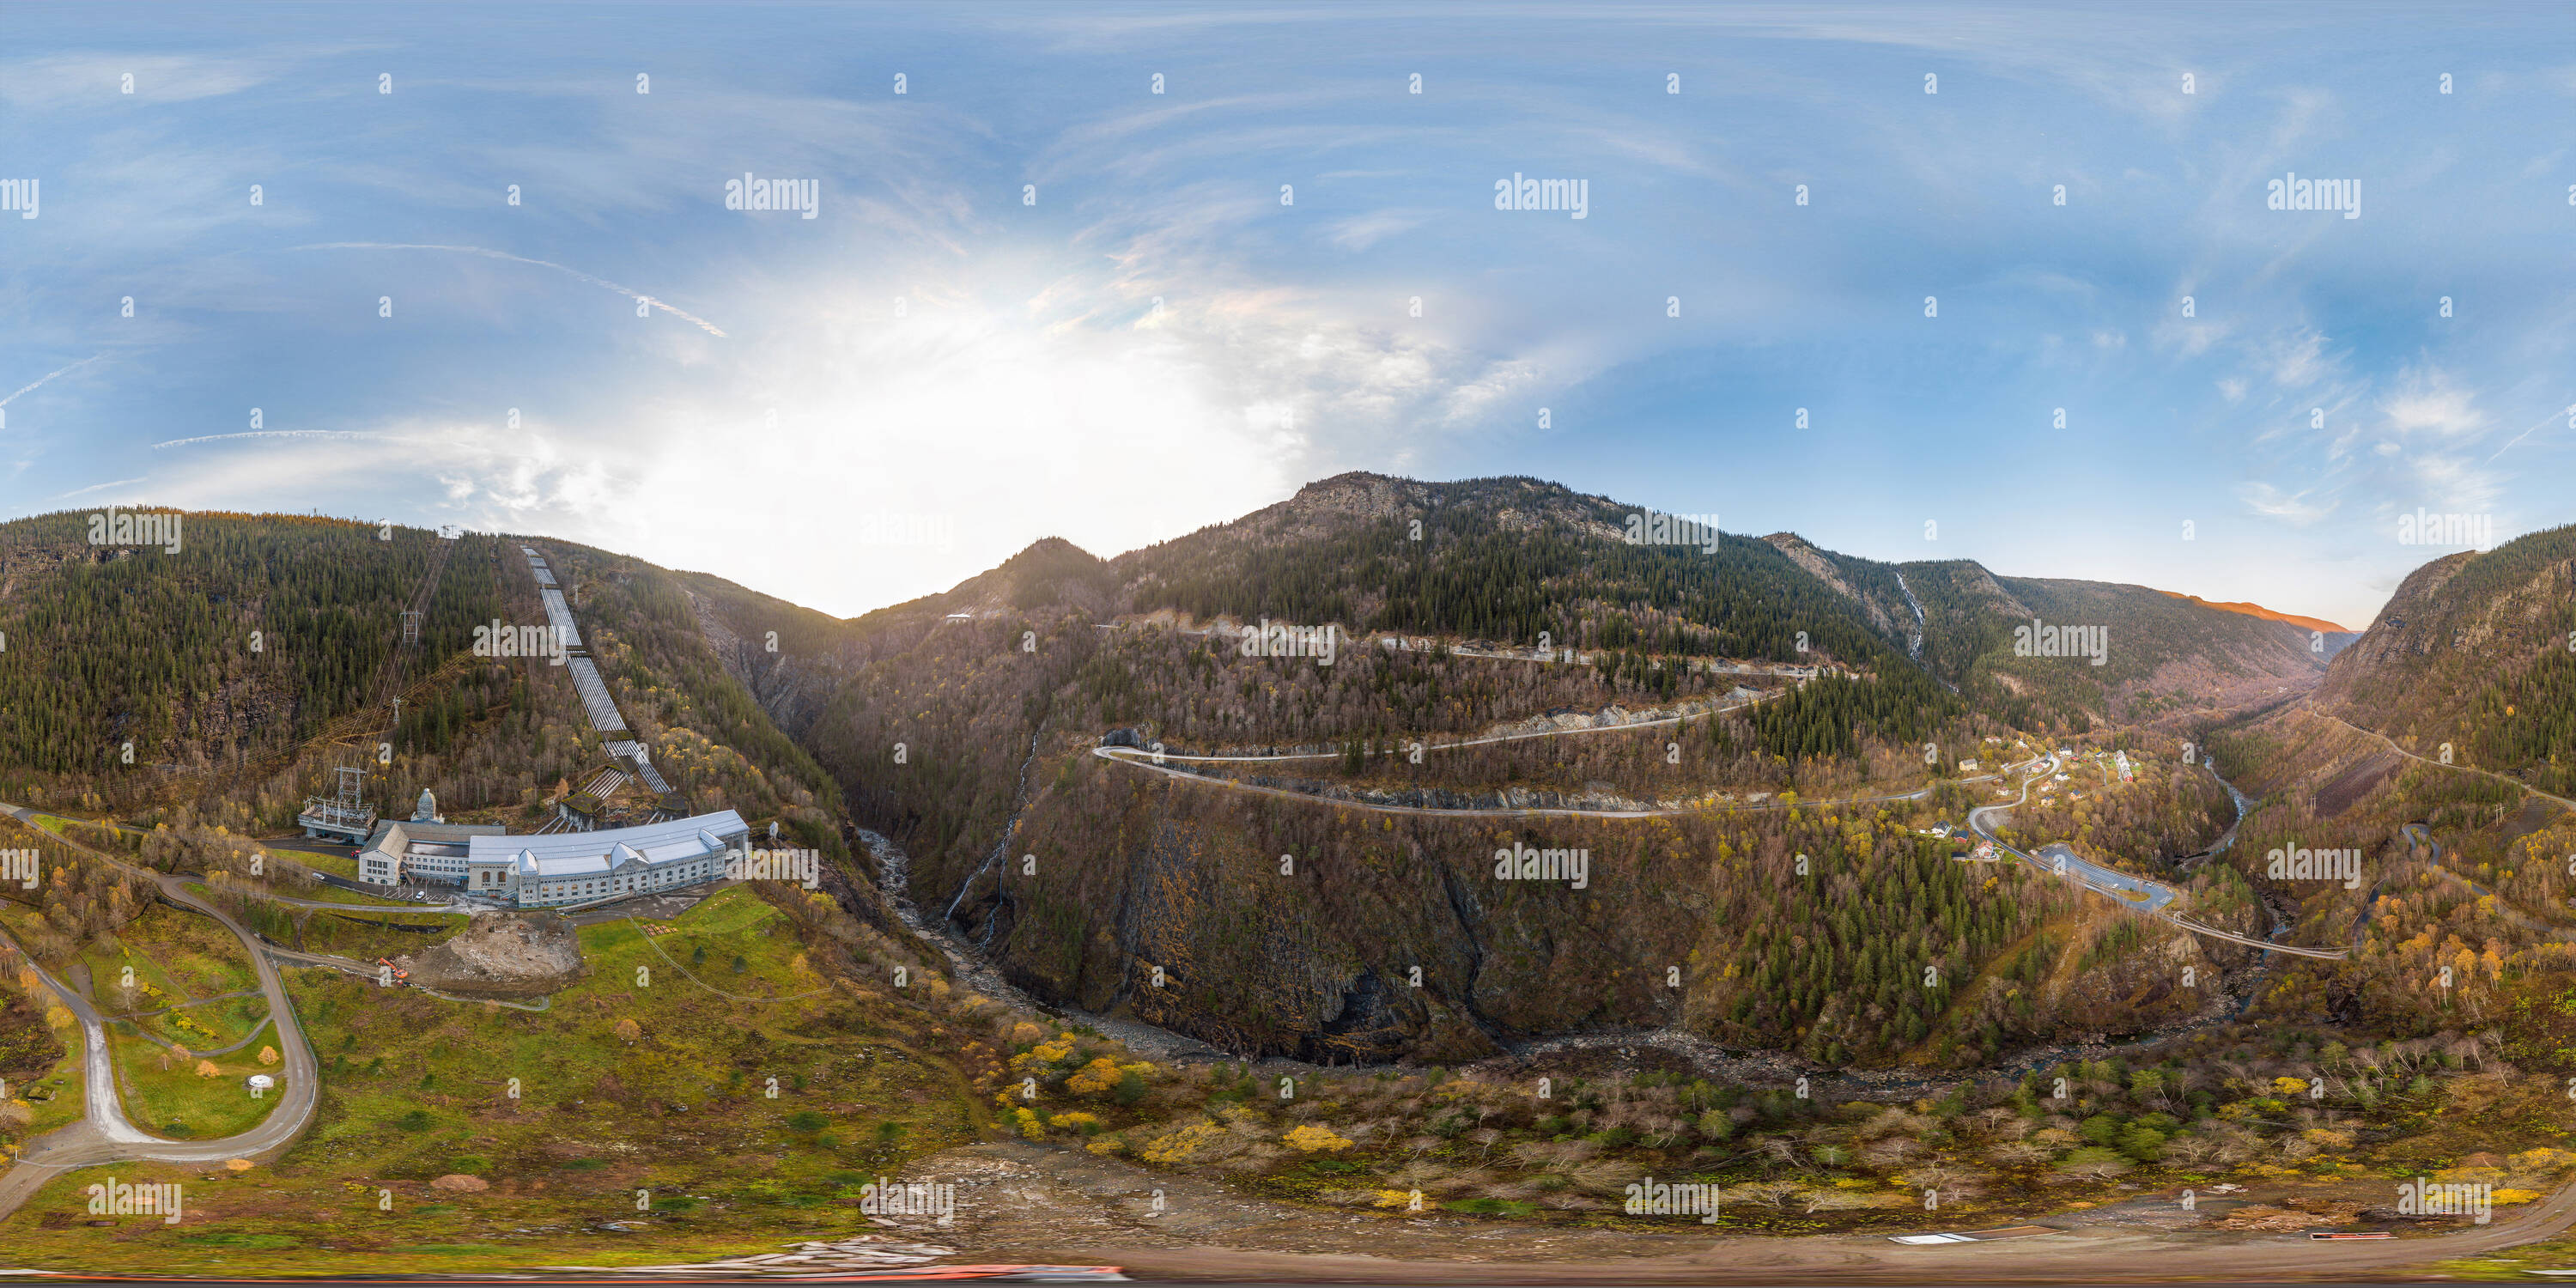 360 degree panoramic view of Vemork, Norwegian industrial worker museum, Rjukan.